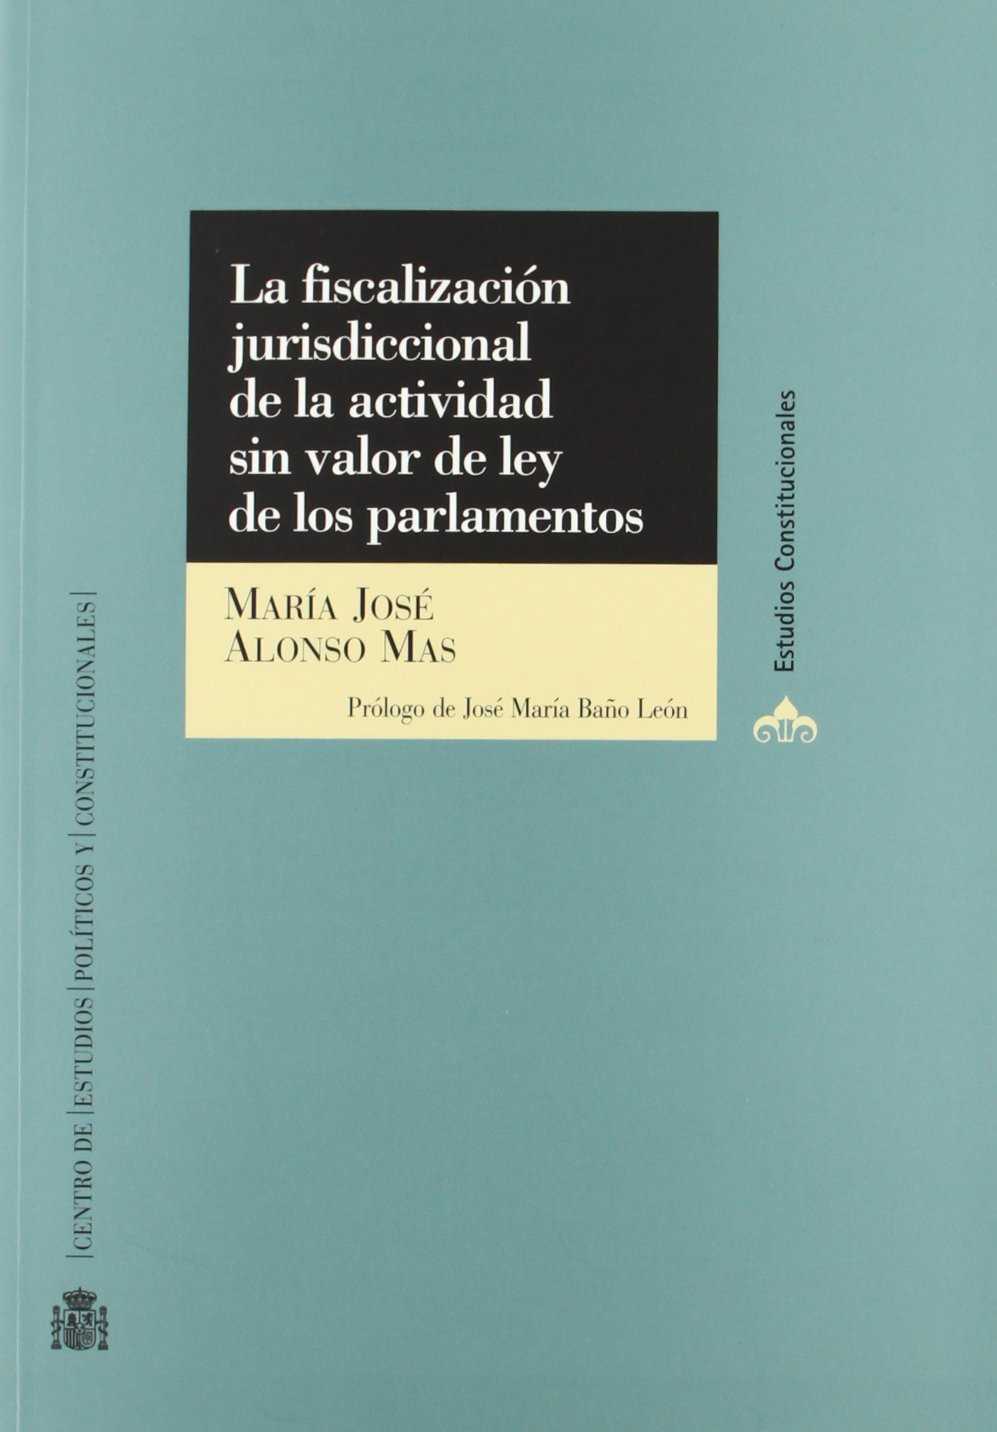 La fiscalización jurisdiccional de la actividad sin valor de ley de los parlamentos